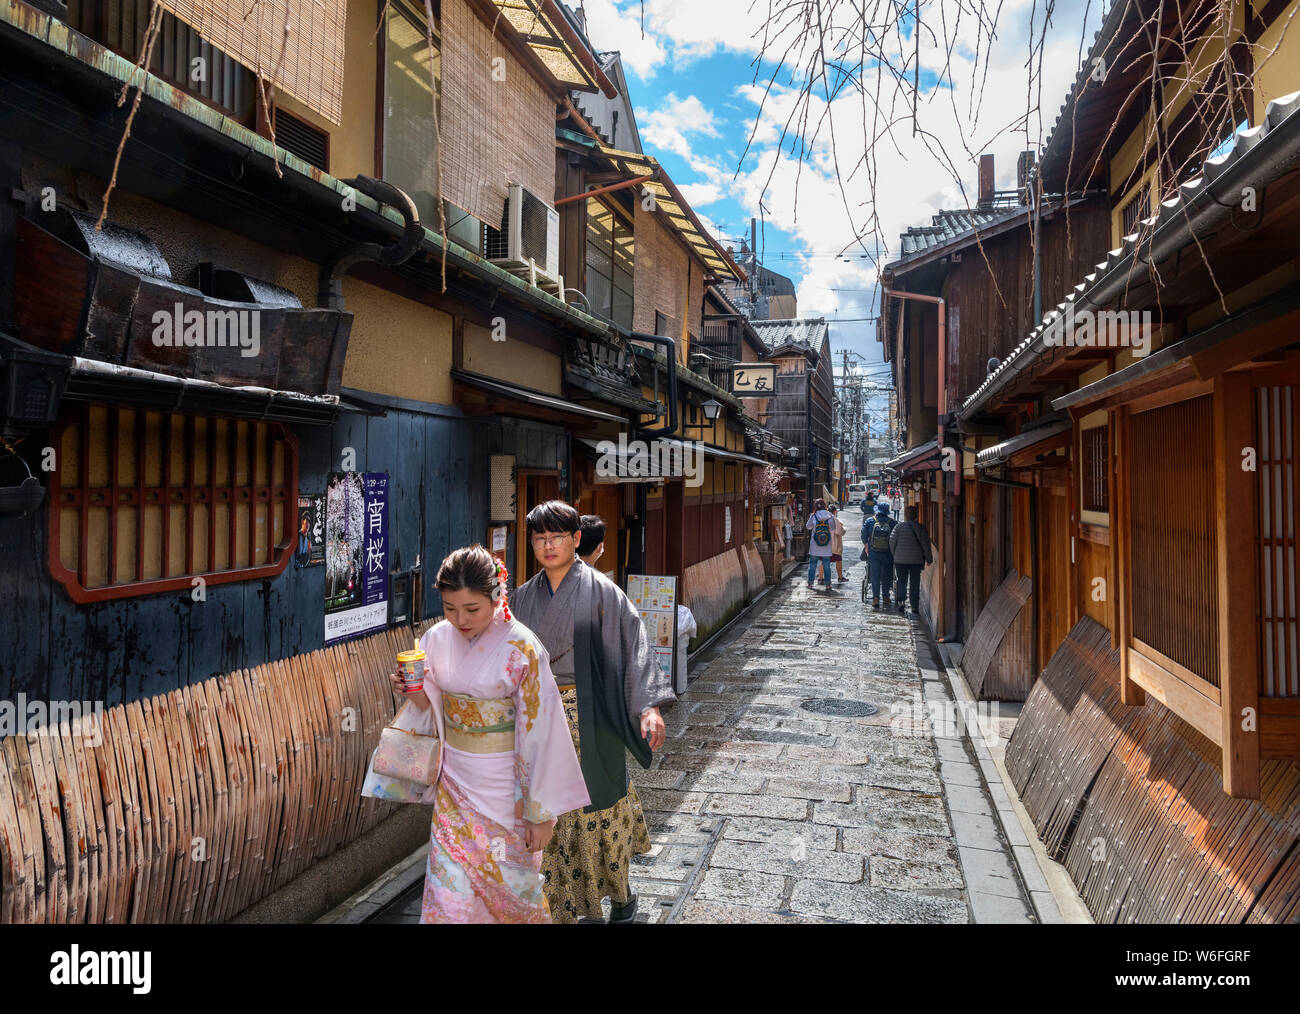 Les bâtiments traditionnels japonais dans le quartier historique de Gion, Kyoto, Japon Banque D'Images